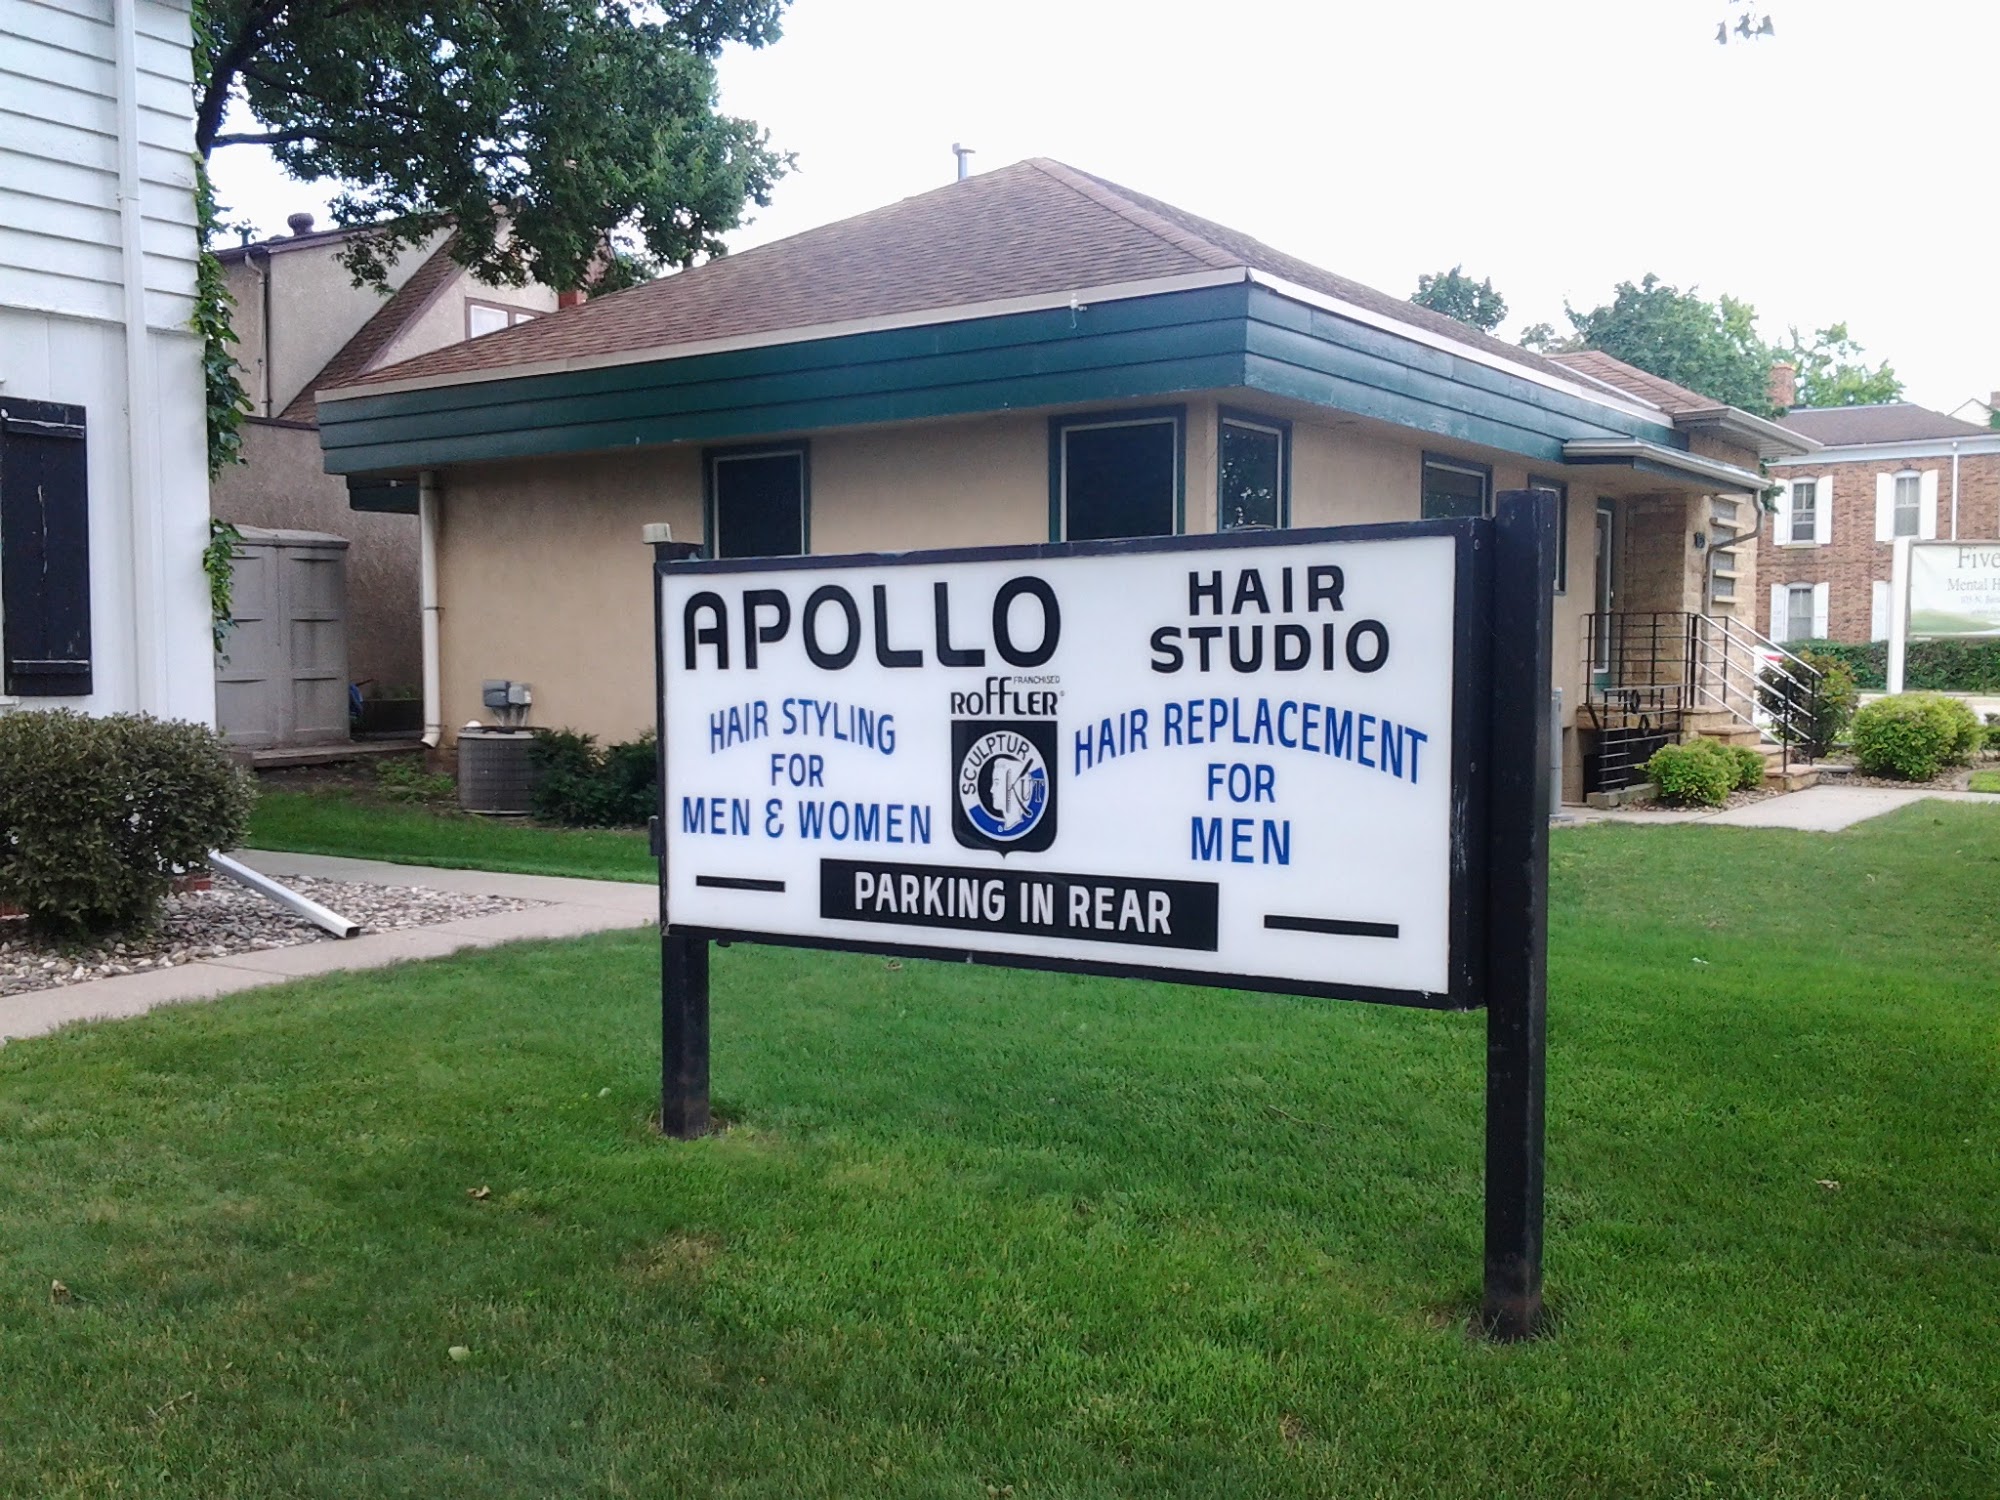 Apollo Hair Studio